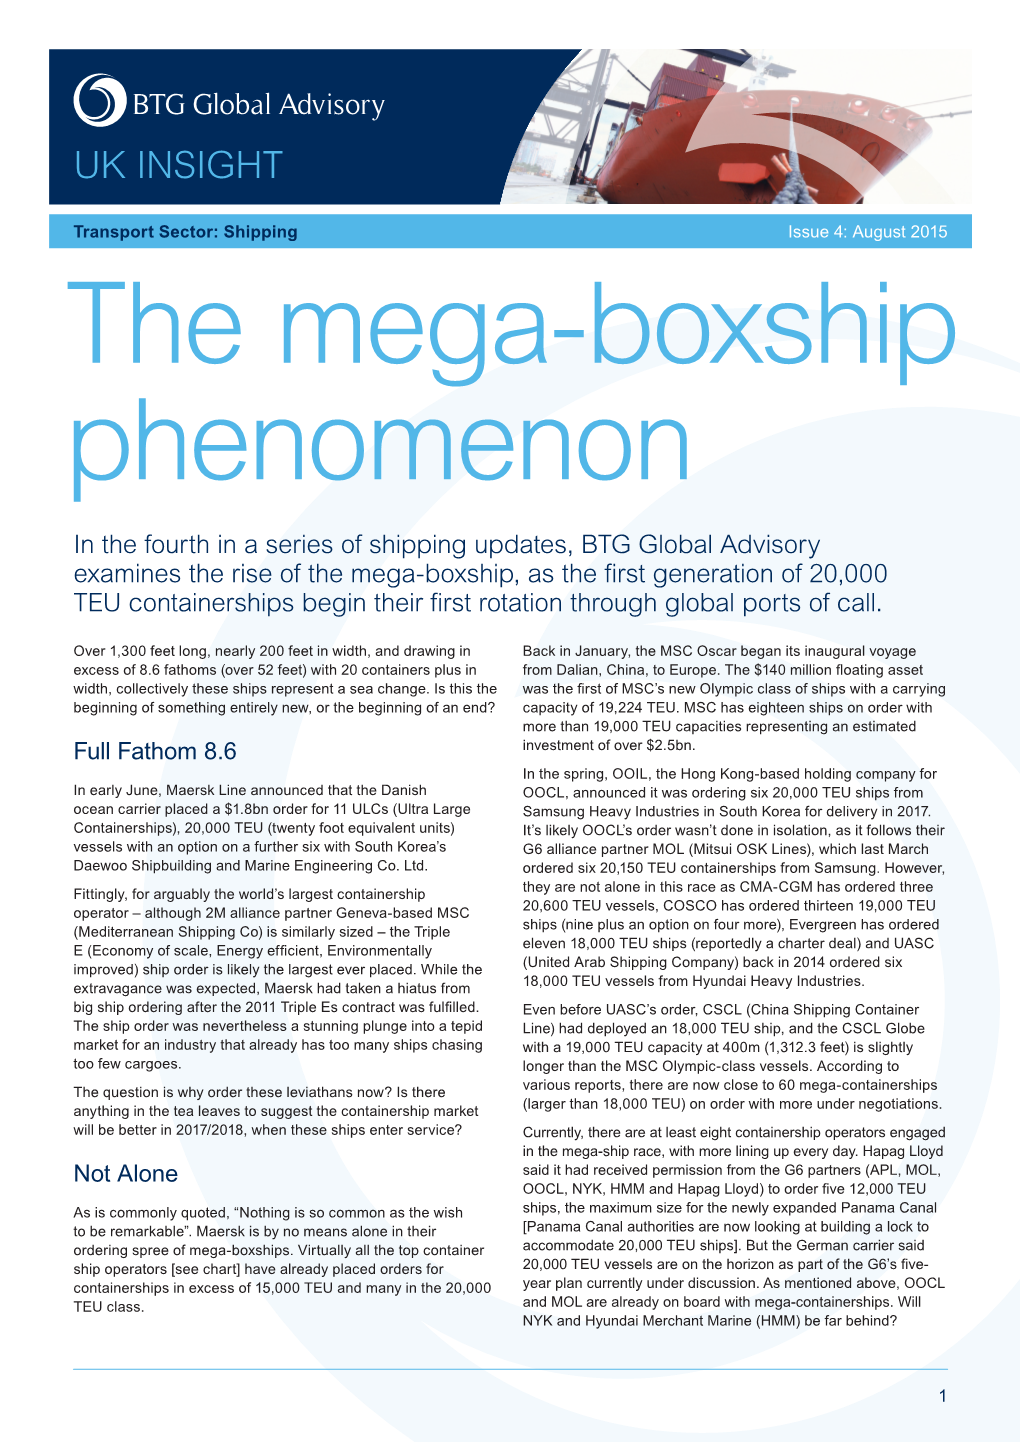 The Mega-Boxship Phenomenon